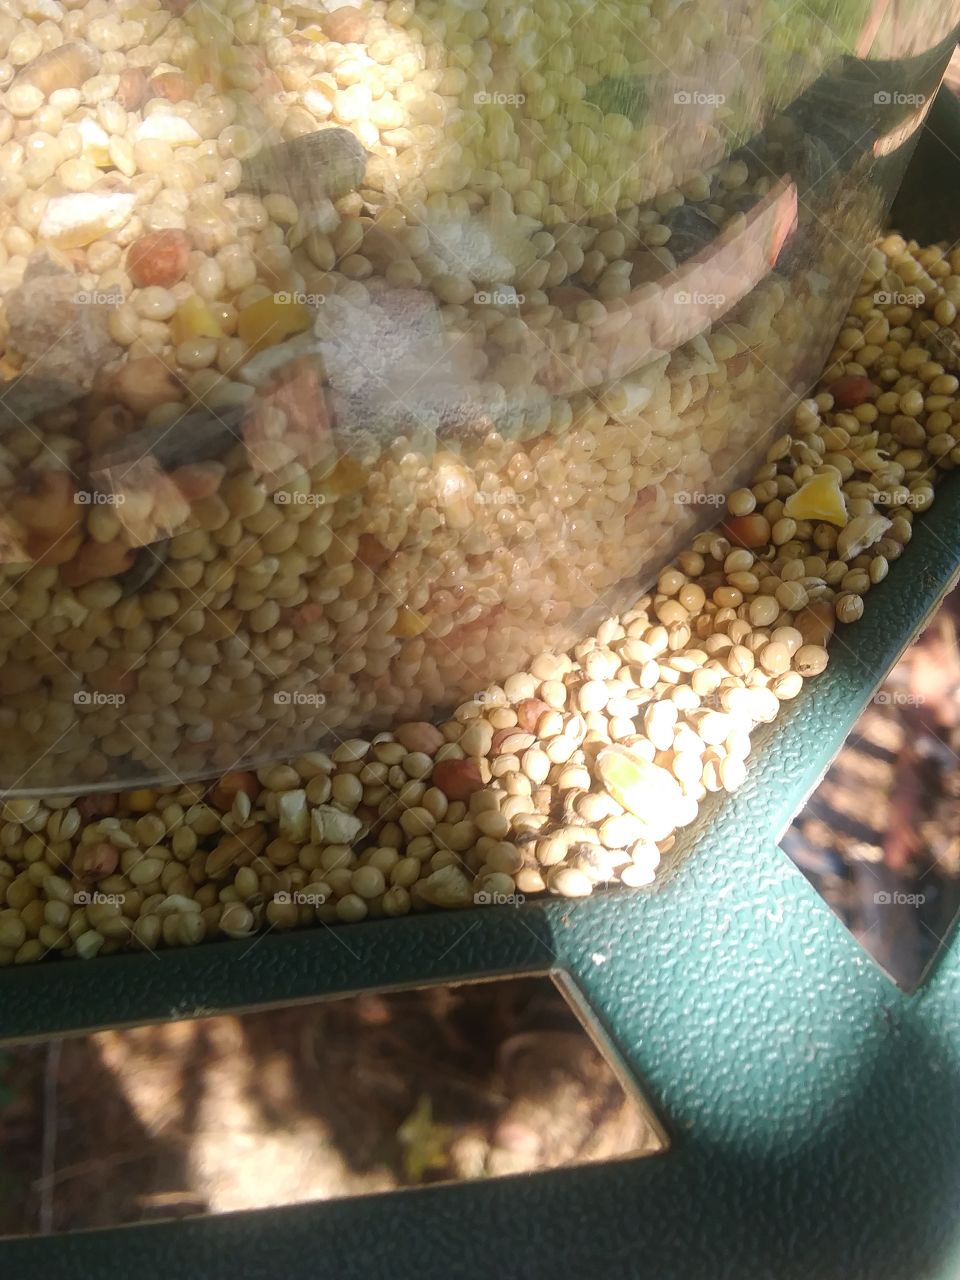 birds view of a bird feeder